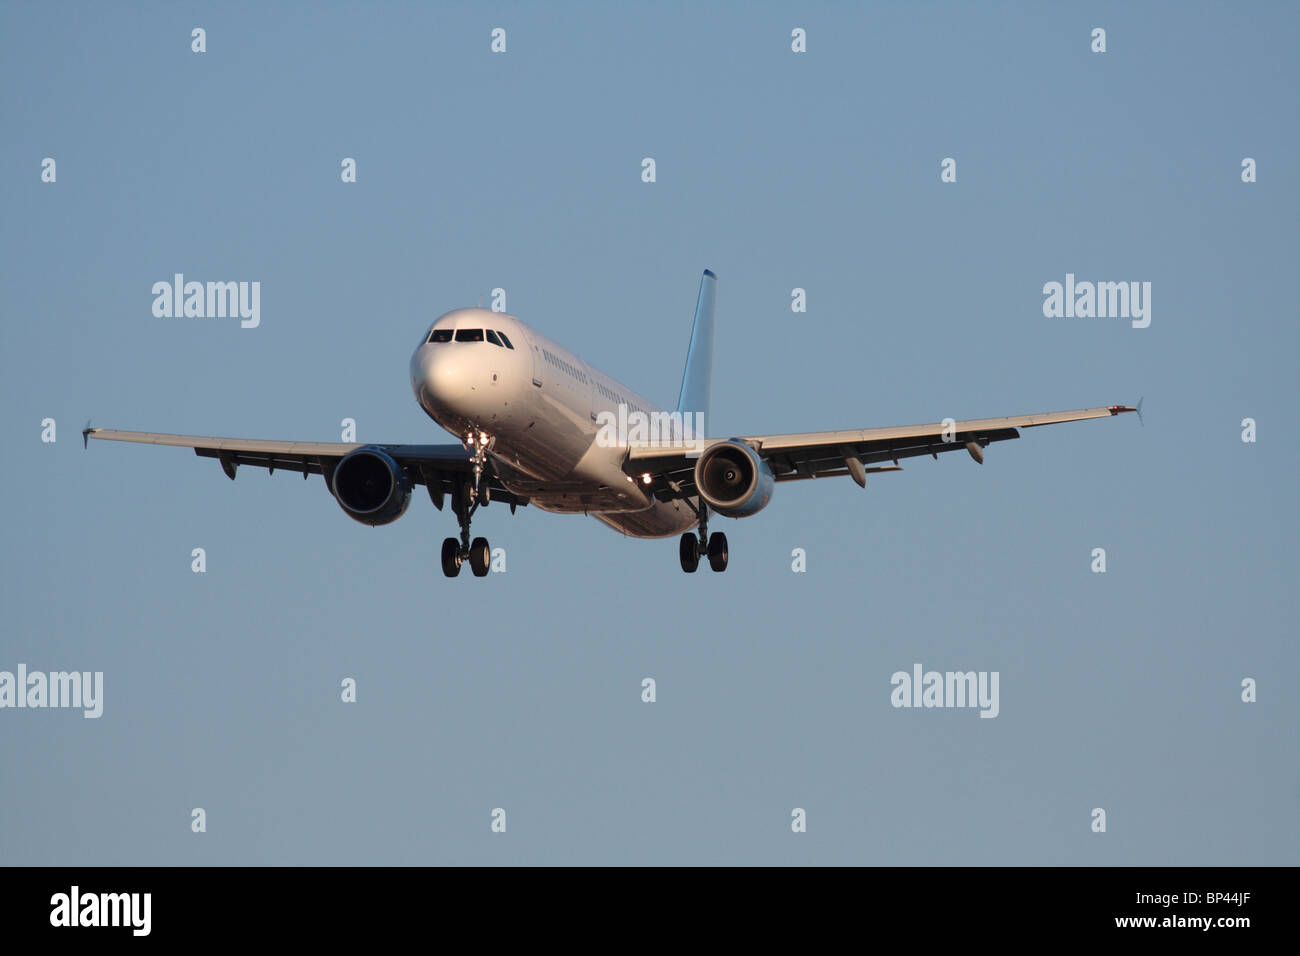 Voyage aérien. Airbus A321 avion-jet de passagers commerciaux à corps étroit volant à l'approche dans un ciel bleu. Vue avant avec détails propriétaires supprimés. Banque D'Images